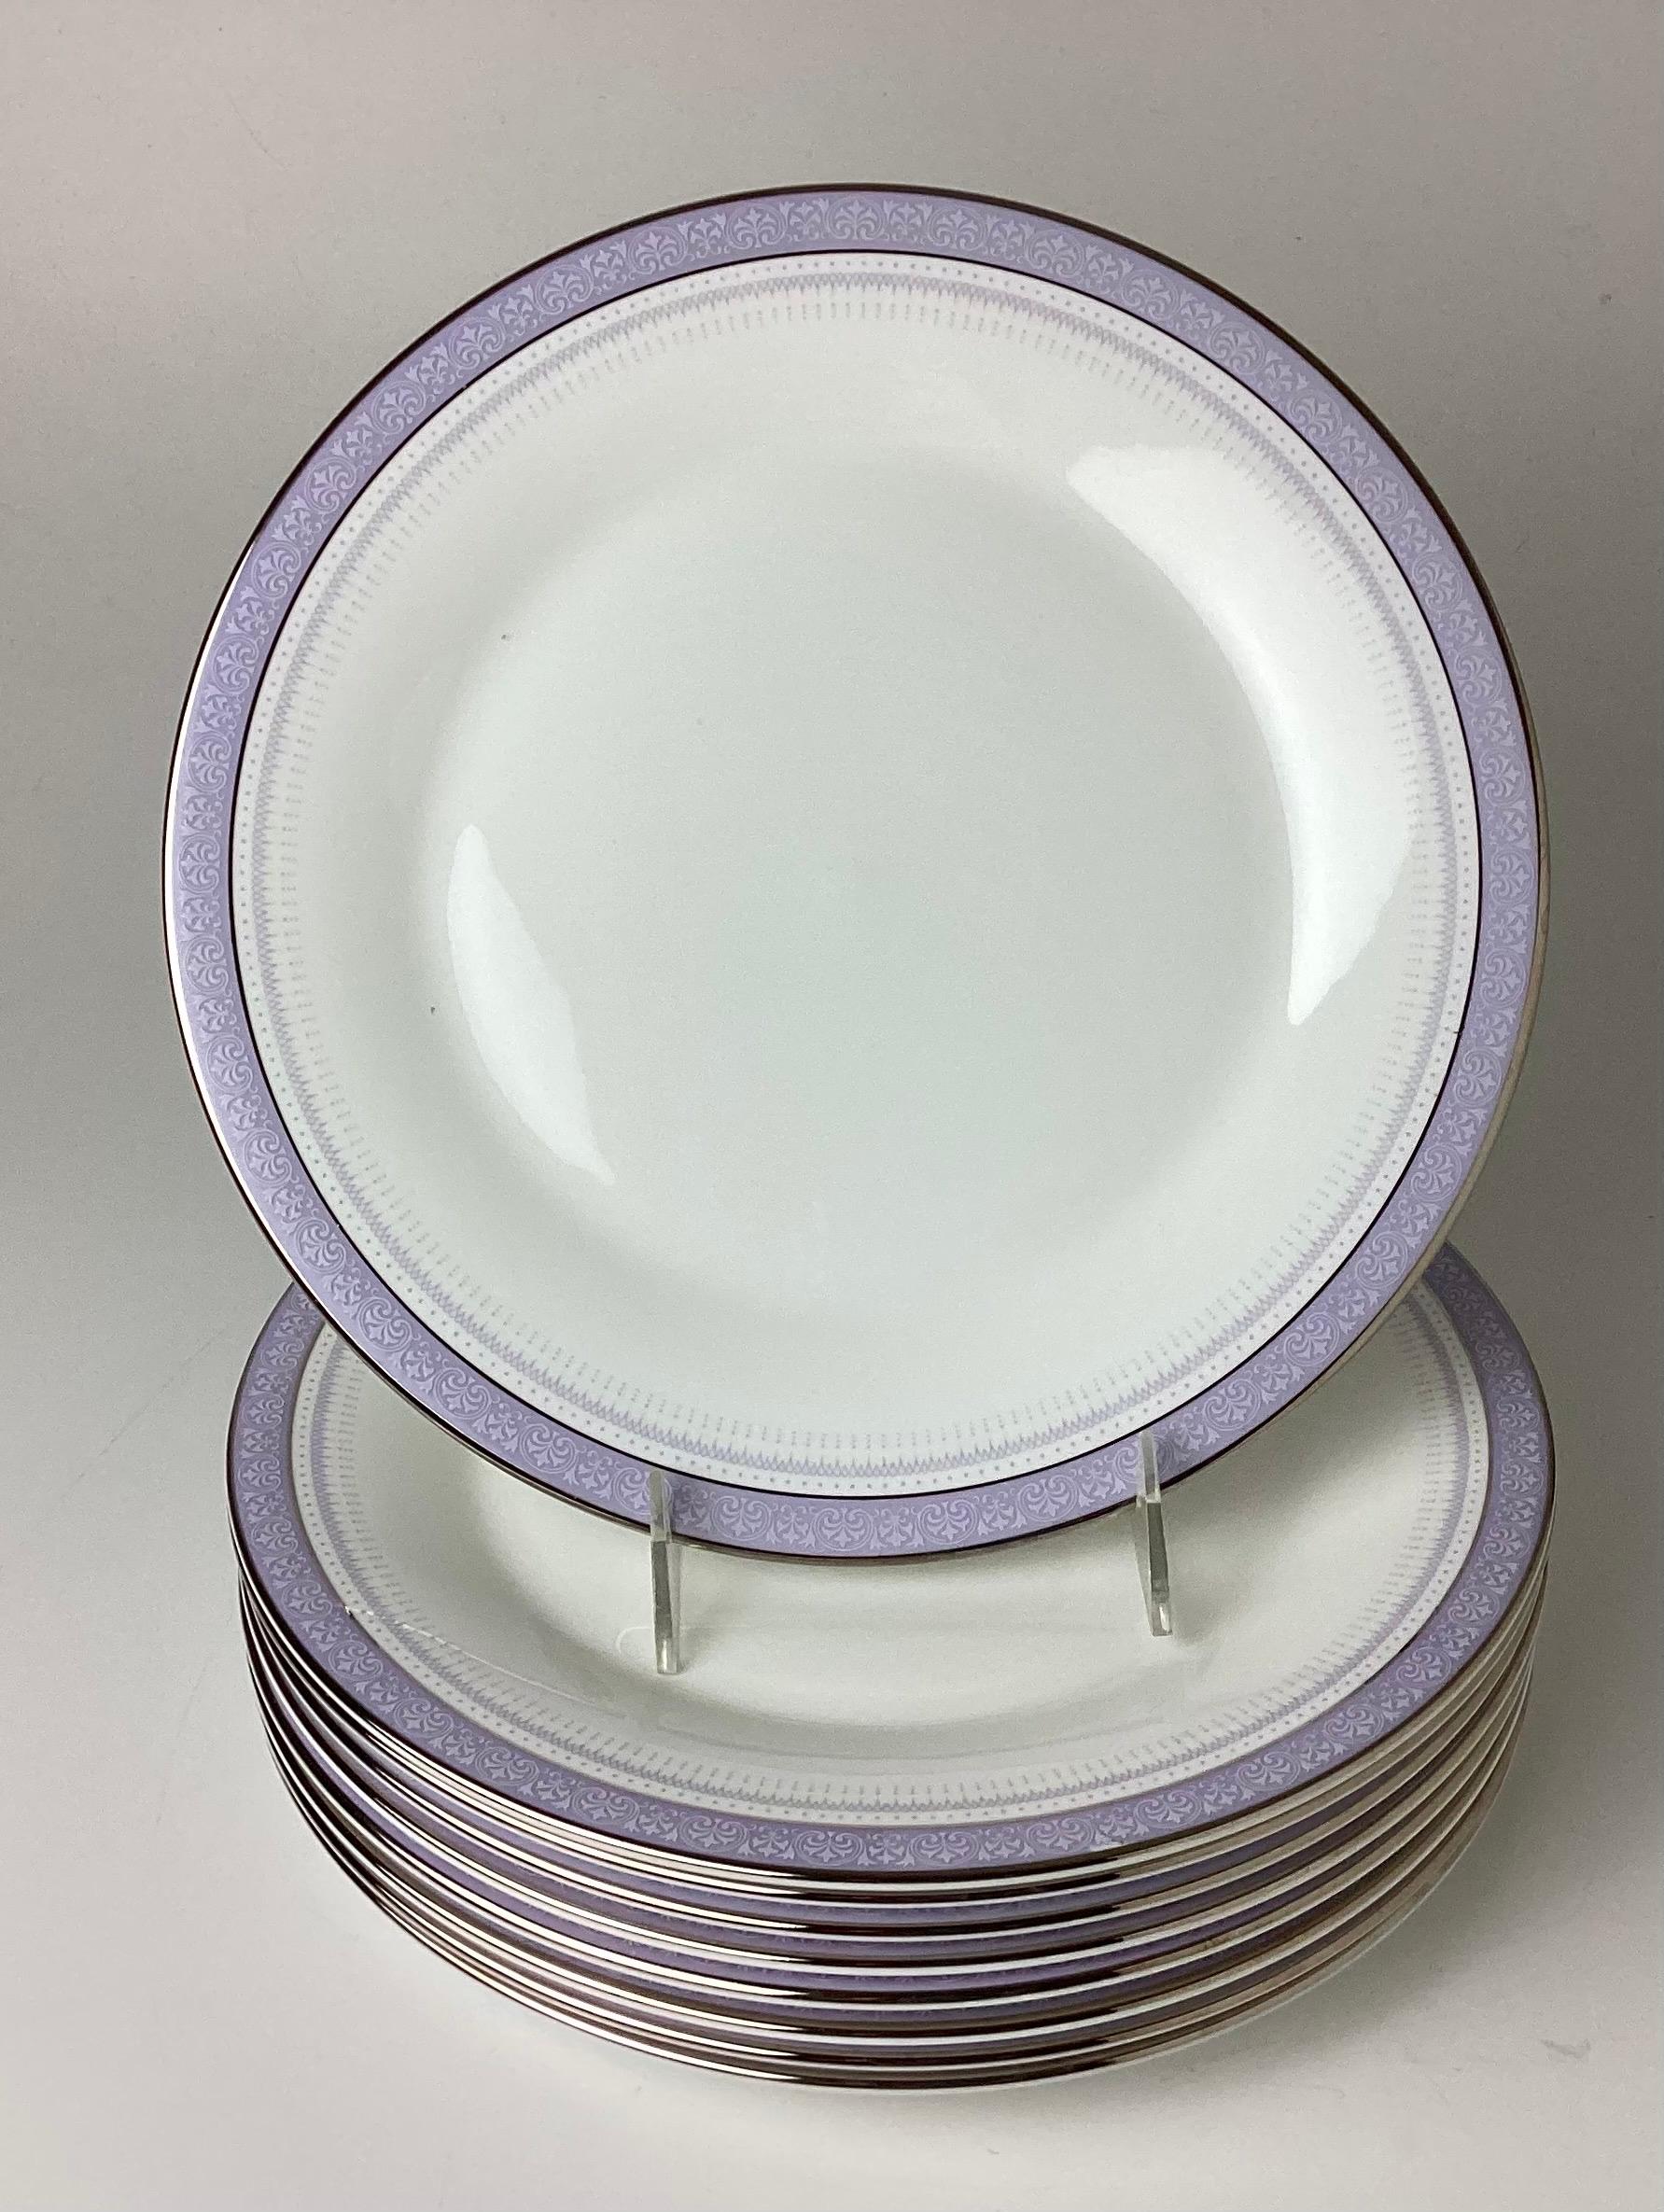 Ensemble de 8 plus une assiette de service Lilactime by ROYAL DOULTON. Rouleaux blancs sur bandeau lilas. 10 3/4